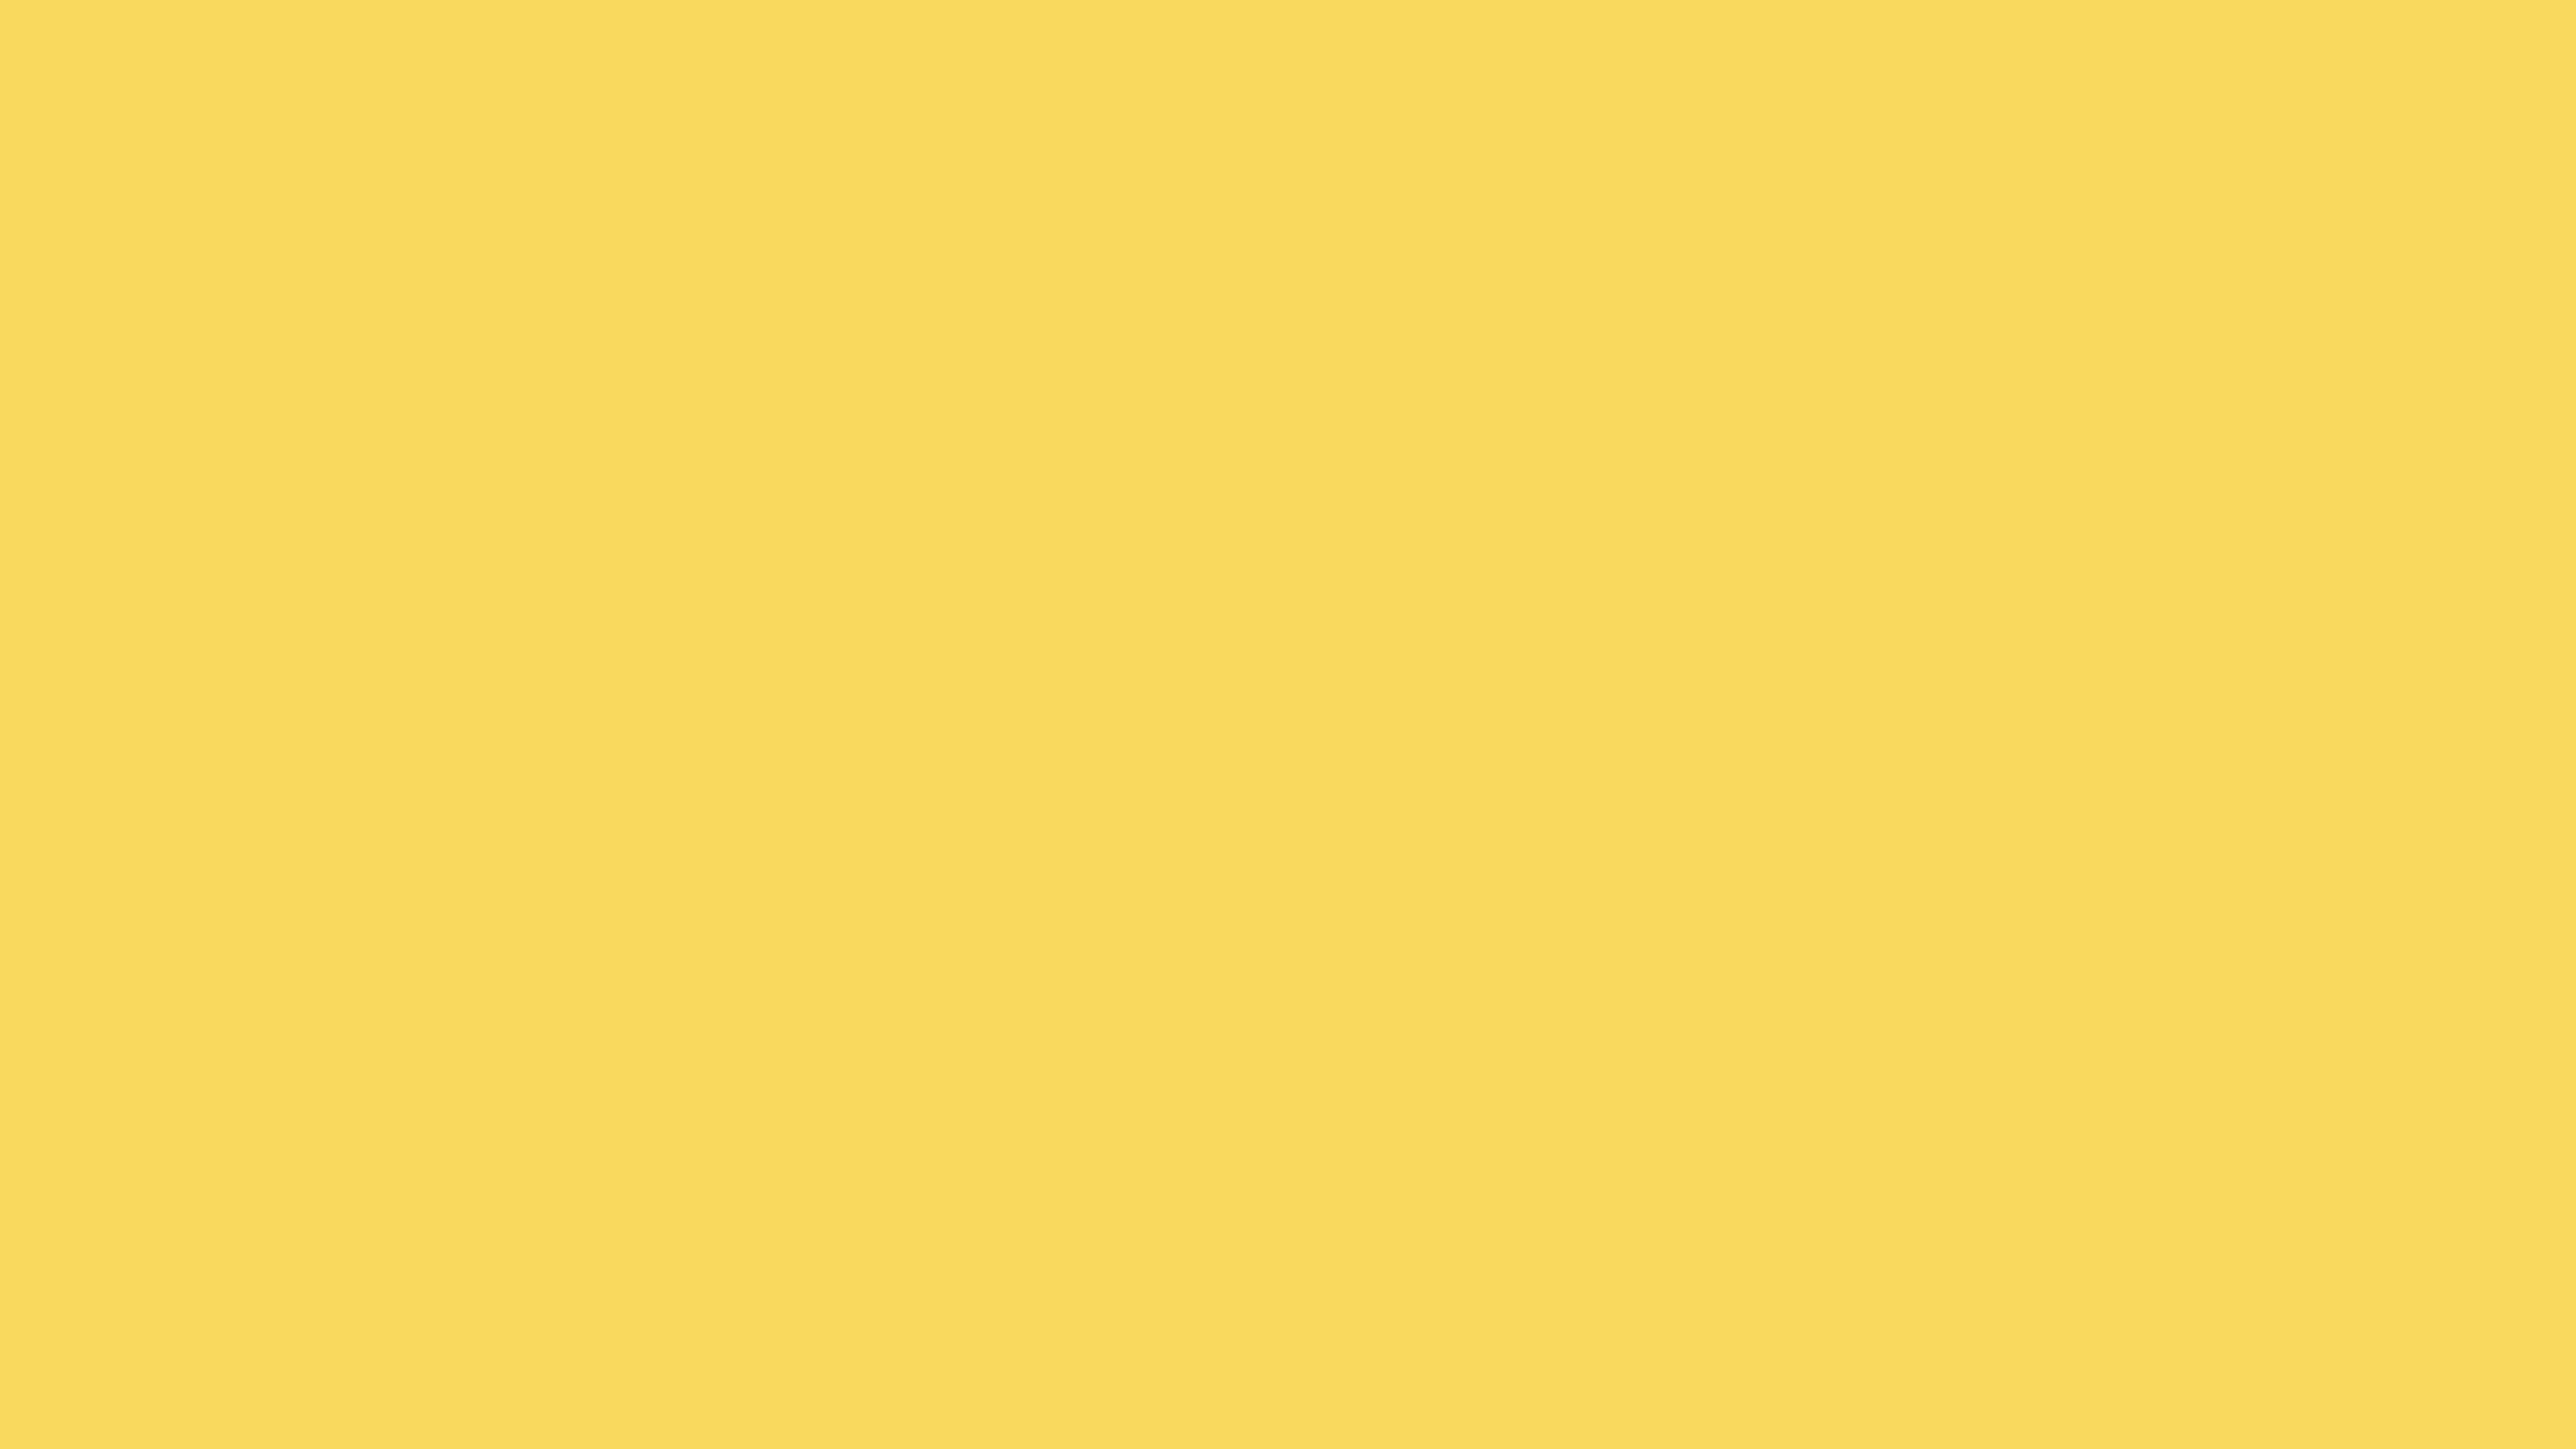 7680x4320 Stil De Grain Yellow Solid Color Background